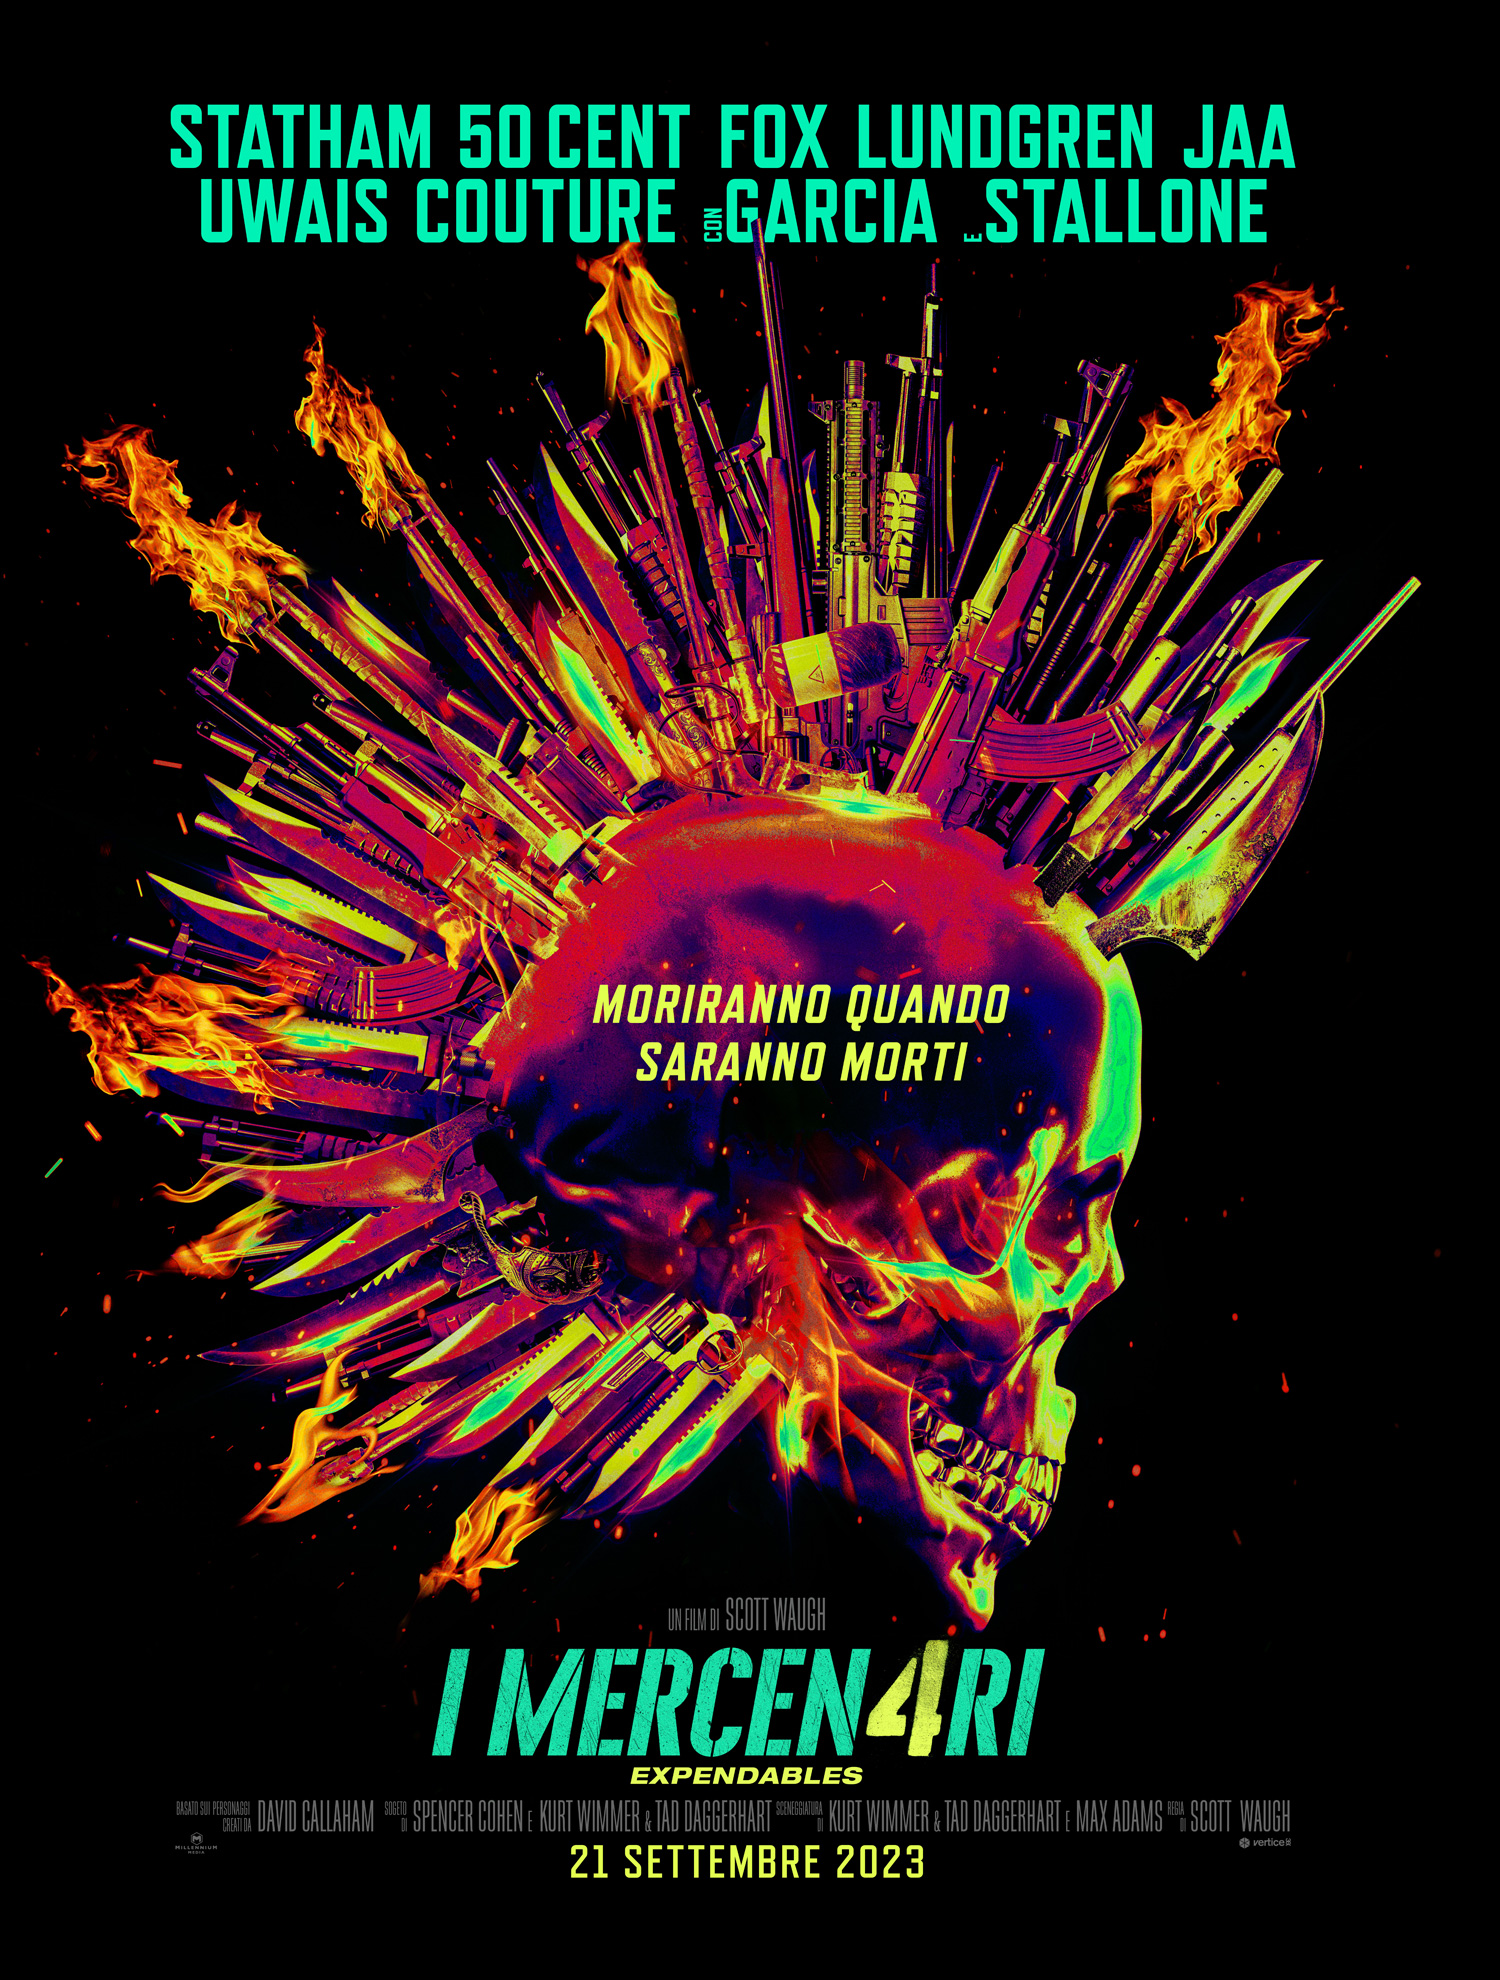 I Mercen4ri - Expendables - Teaser Poster